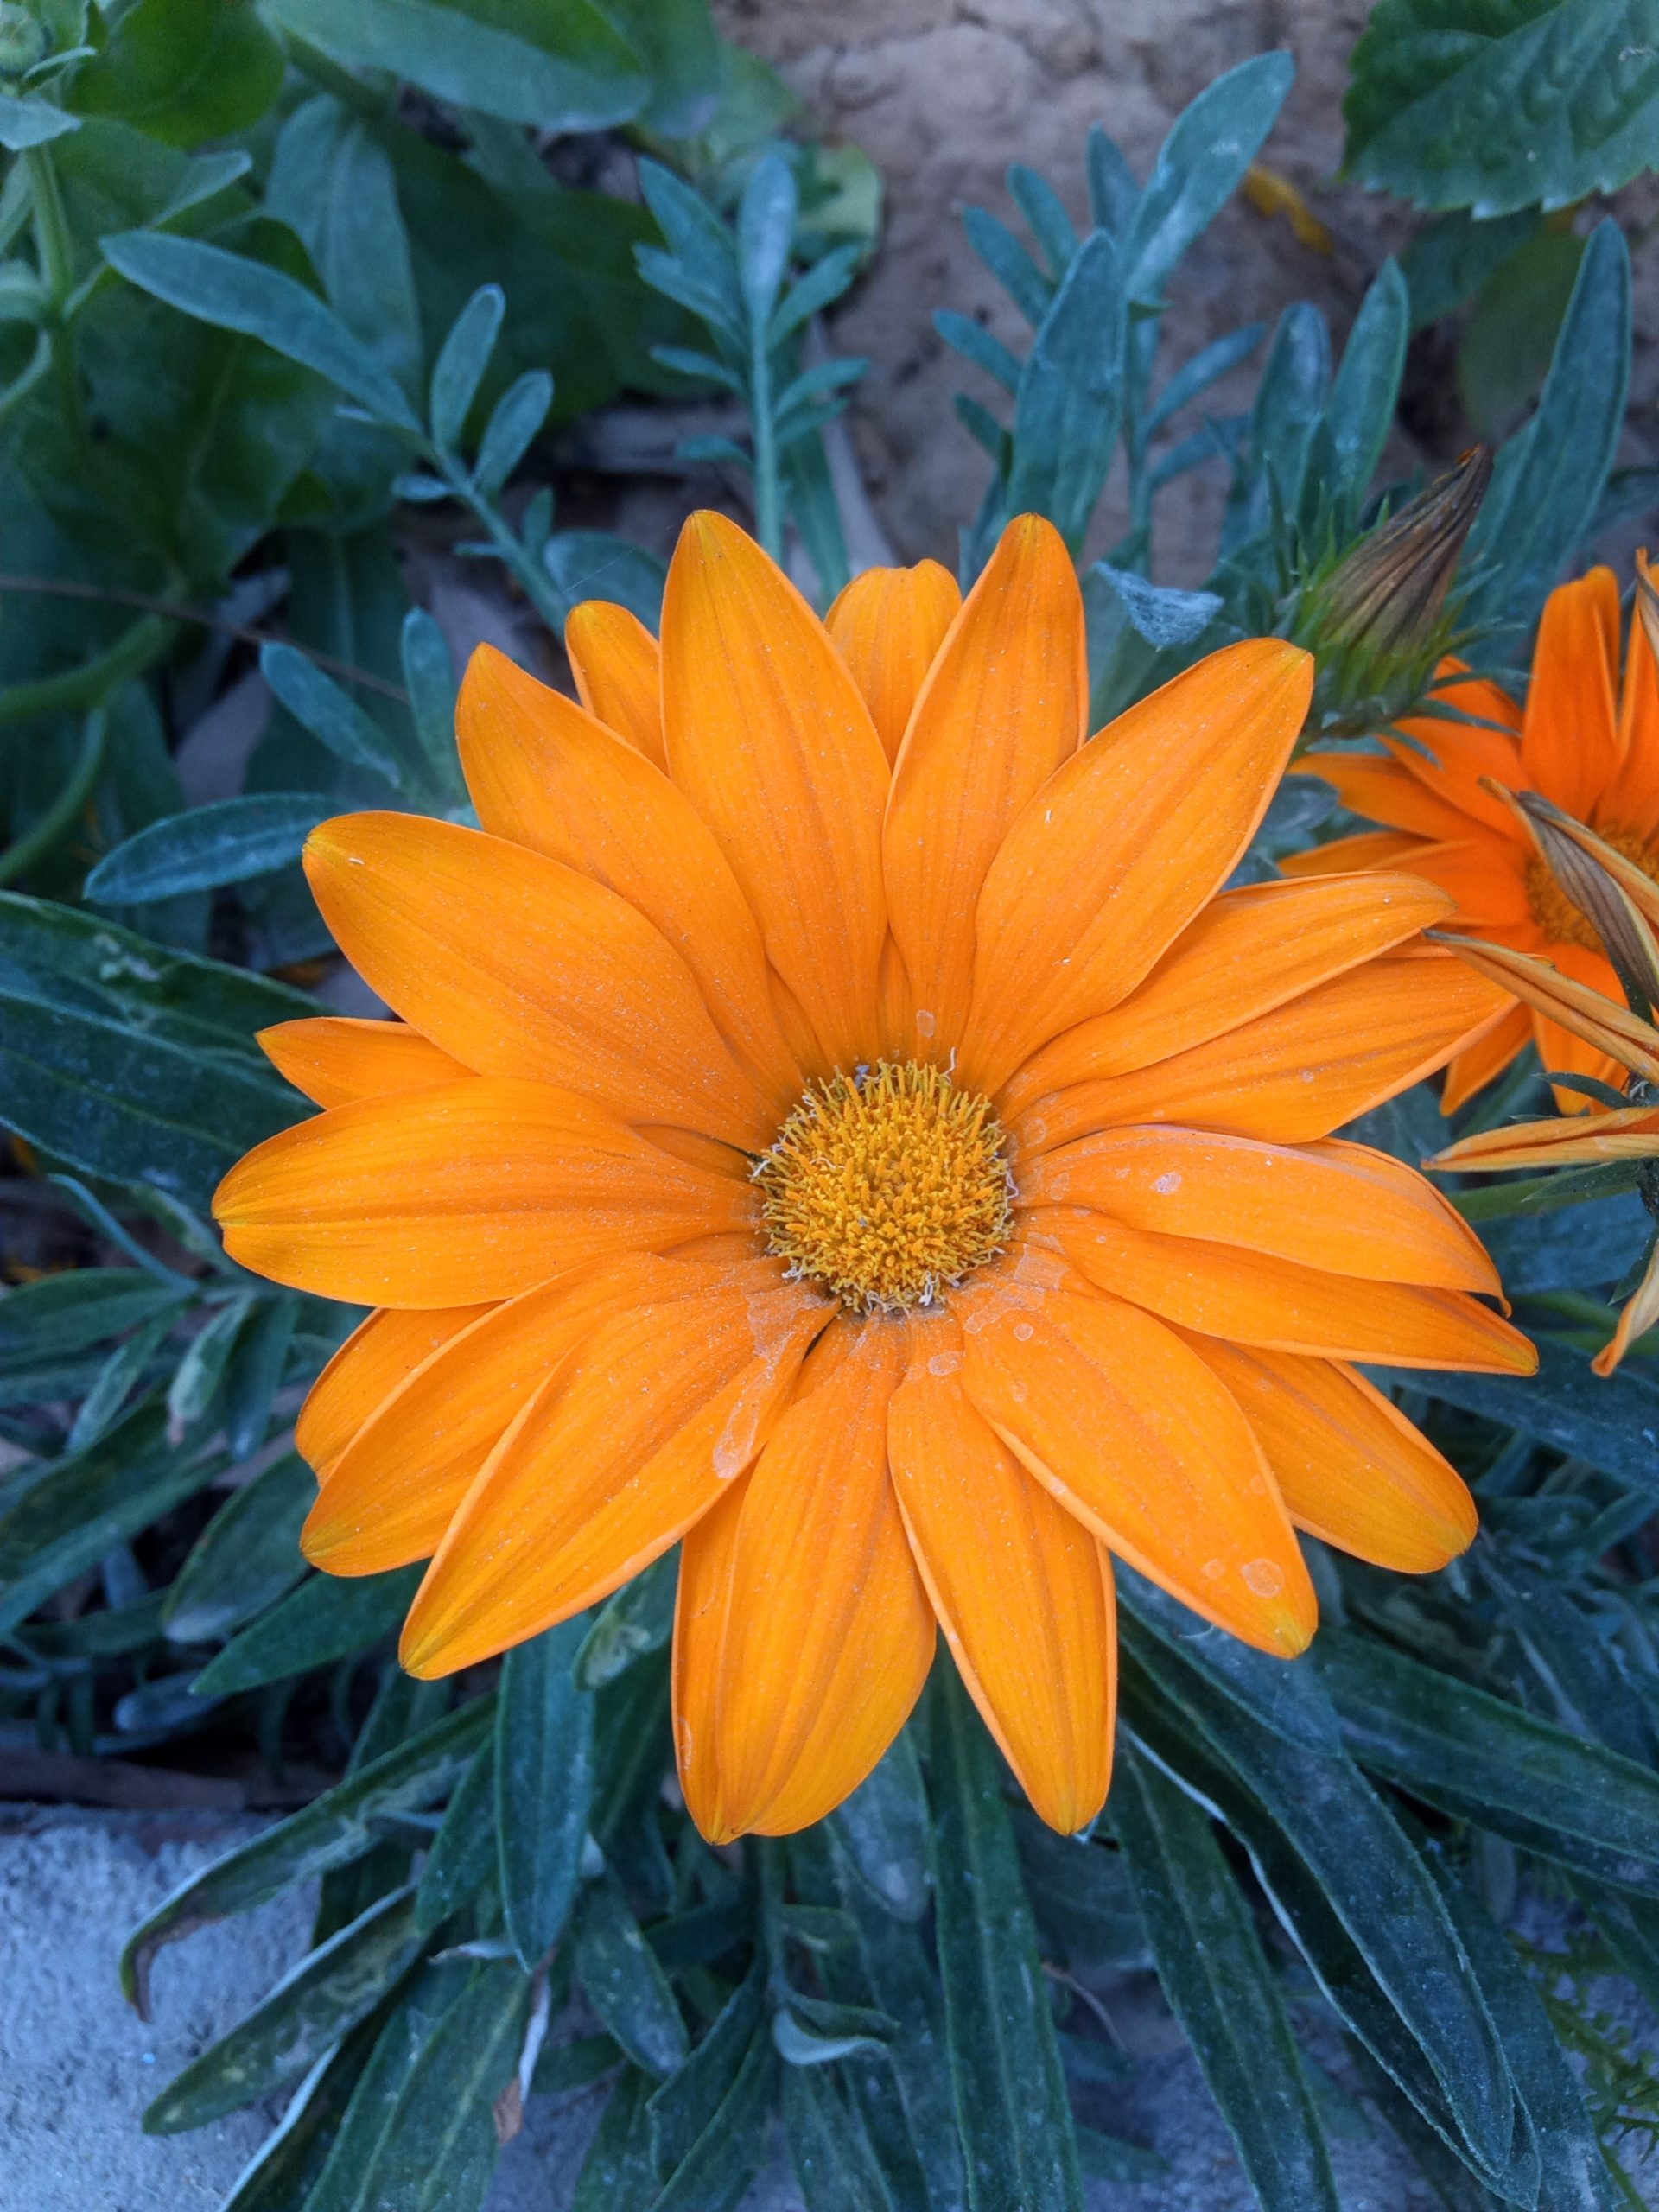 An orange flower